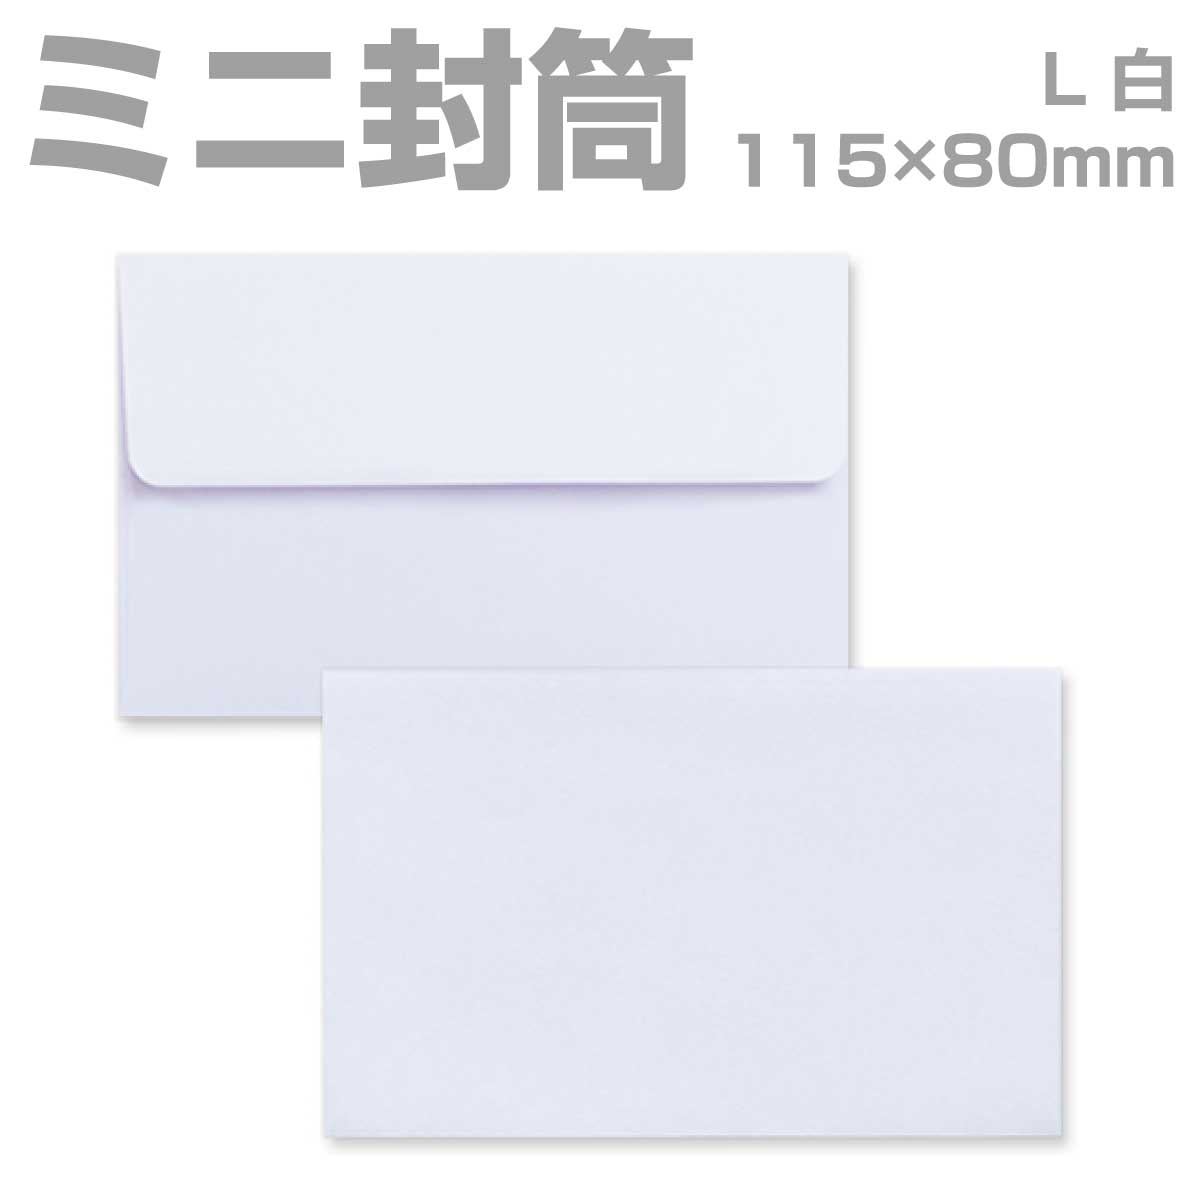 【楽天市場】封筒 名刺サイズ カラー 100枚 【大】 ミニ封筒 ダイヤ